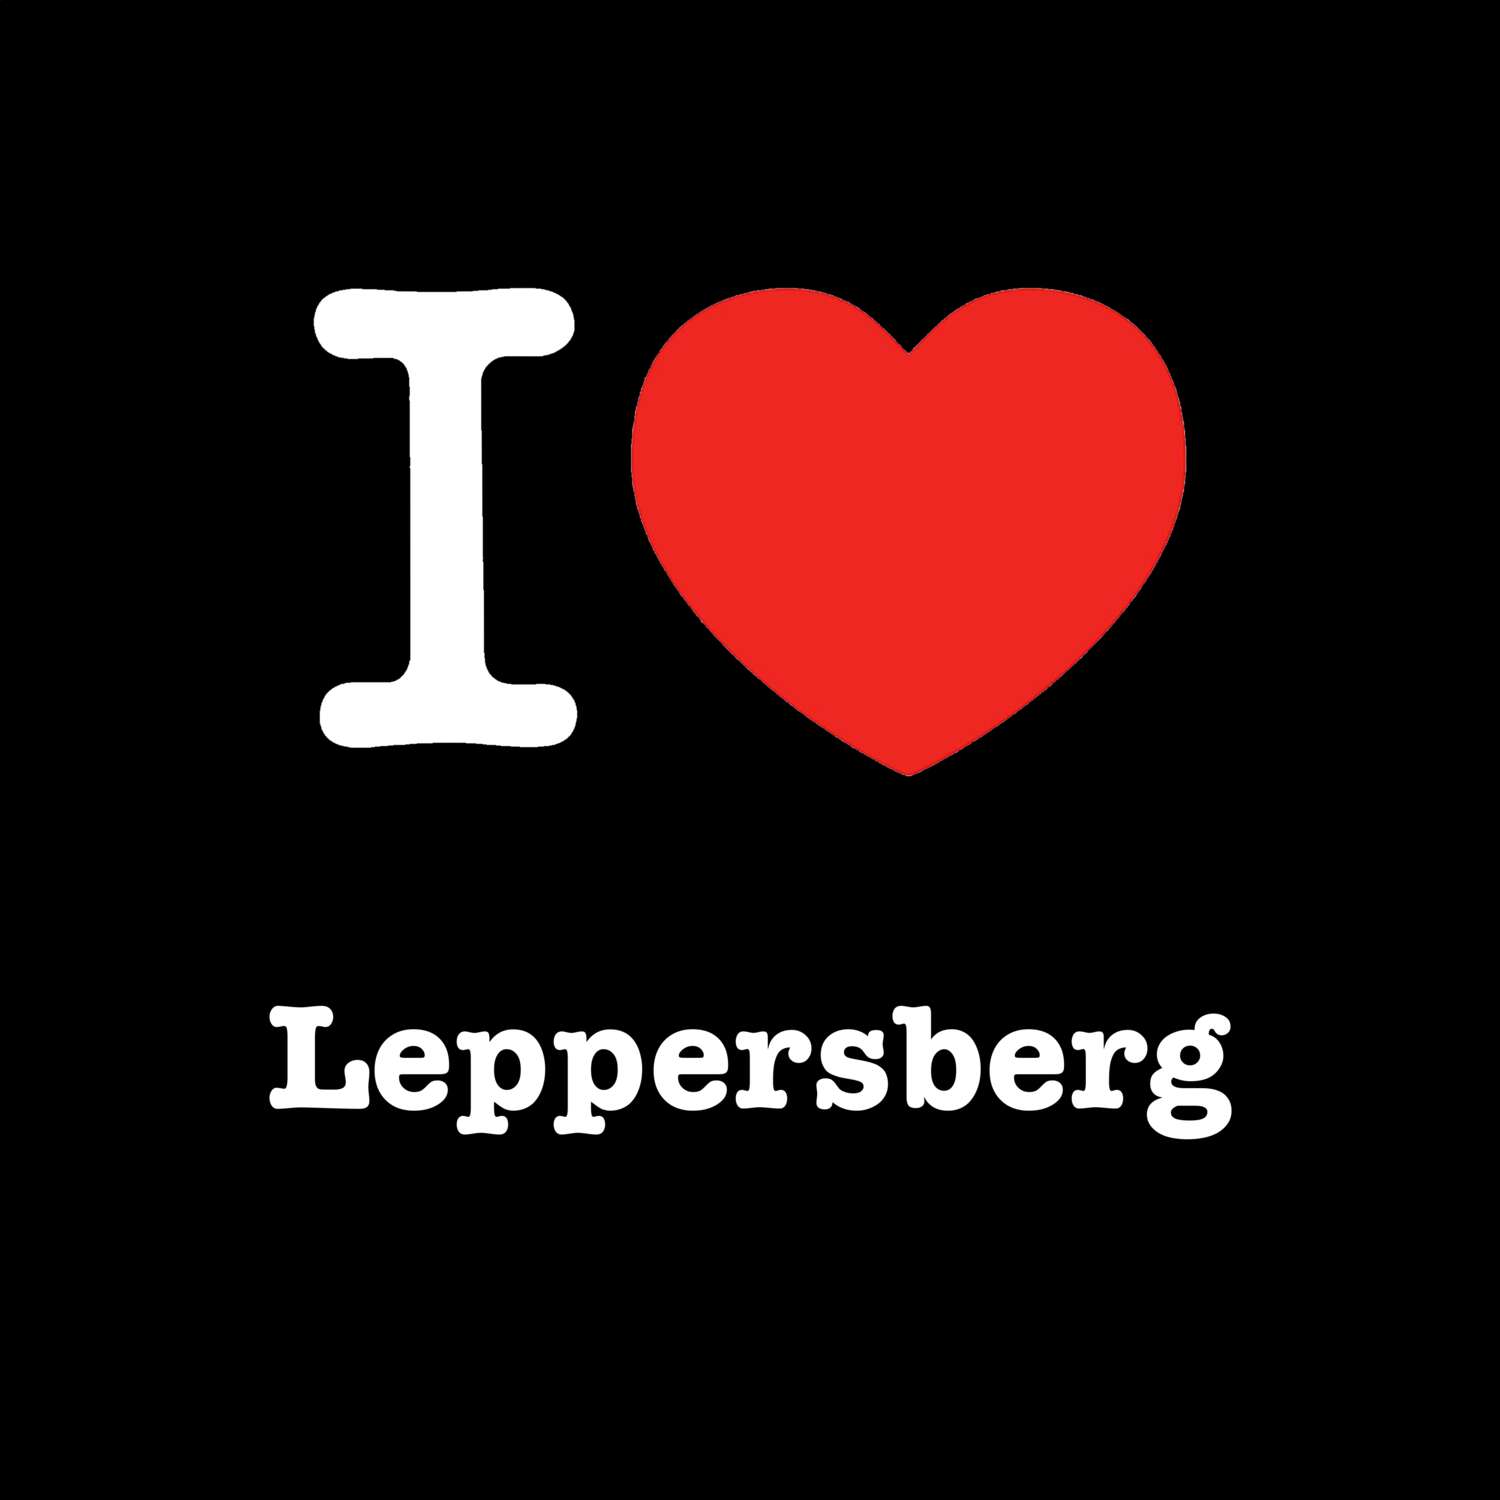 Leppersberg T-Shirt »I love«